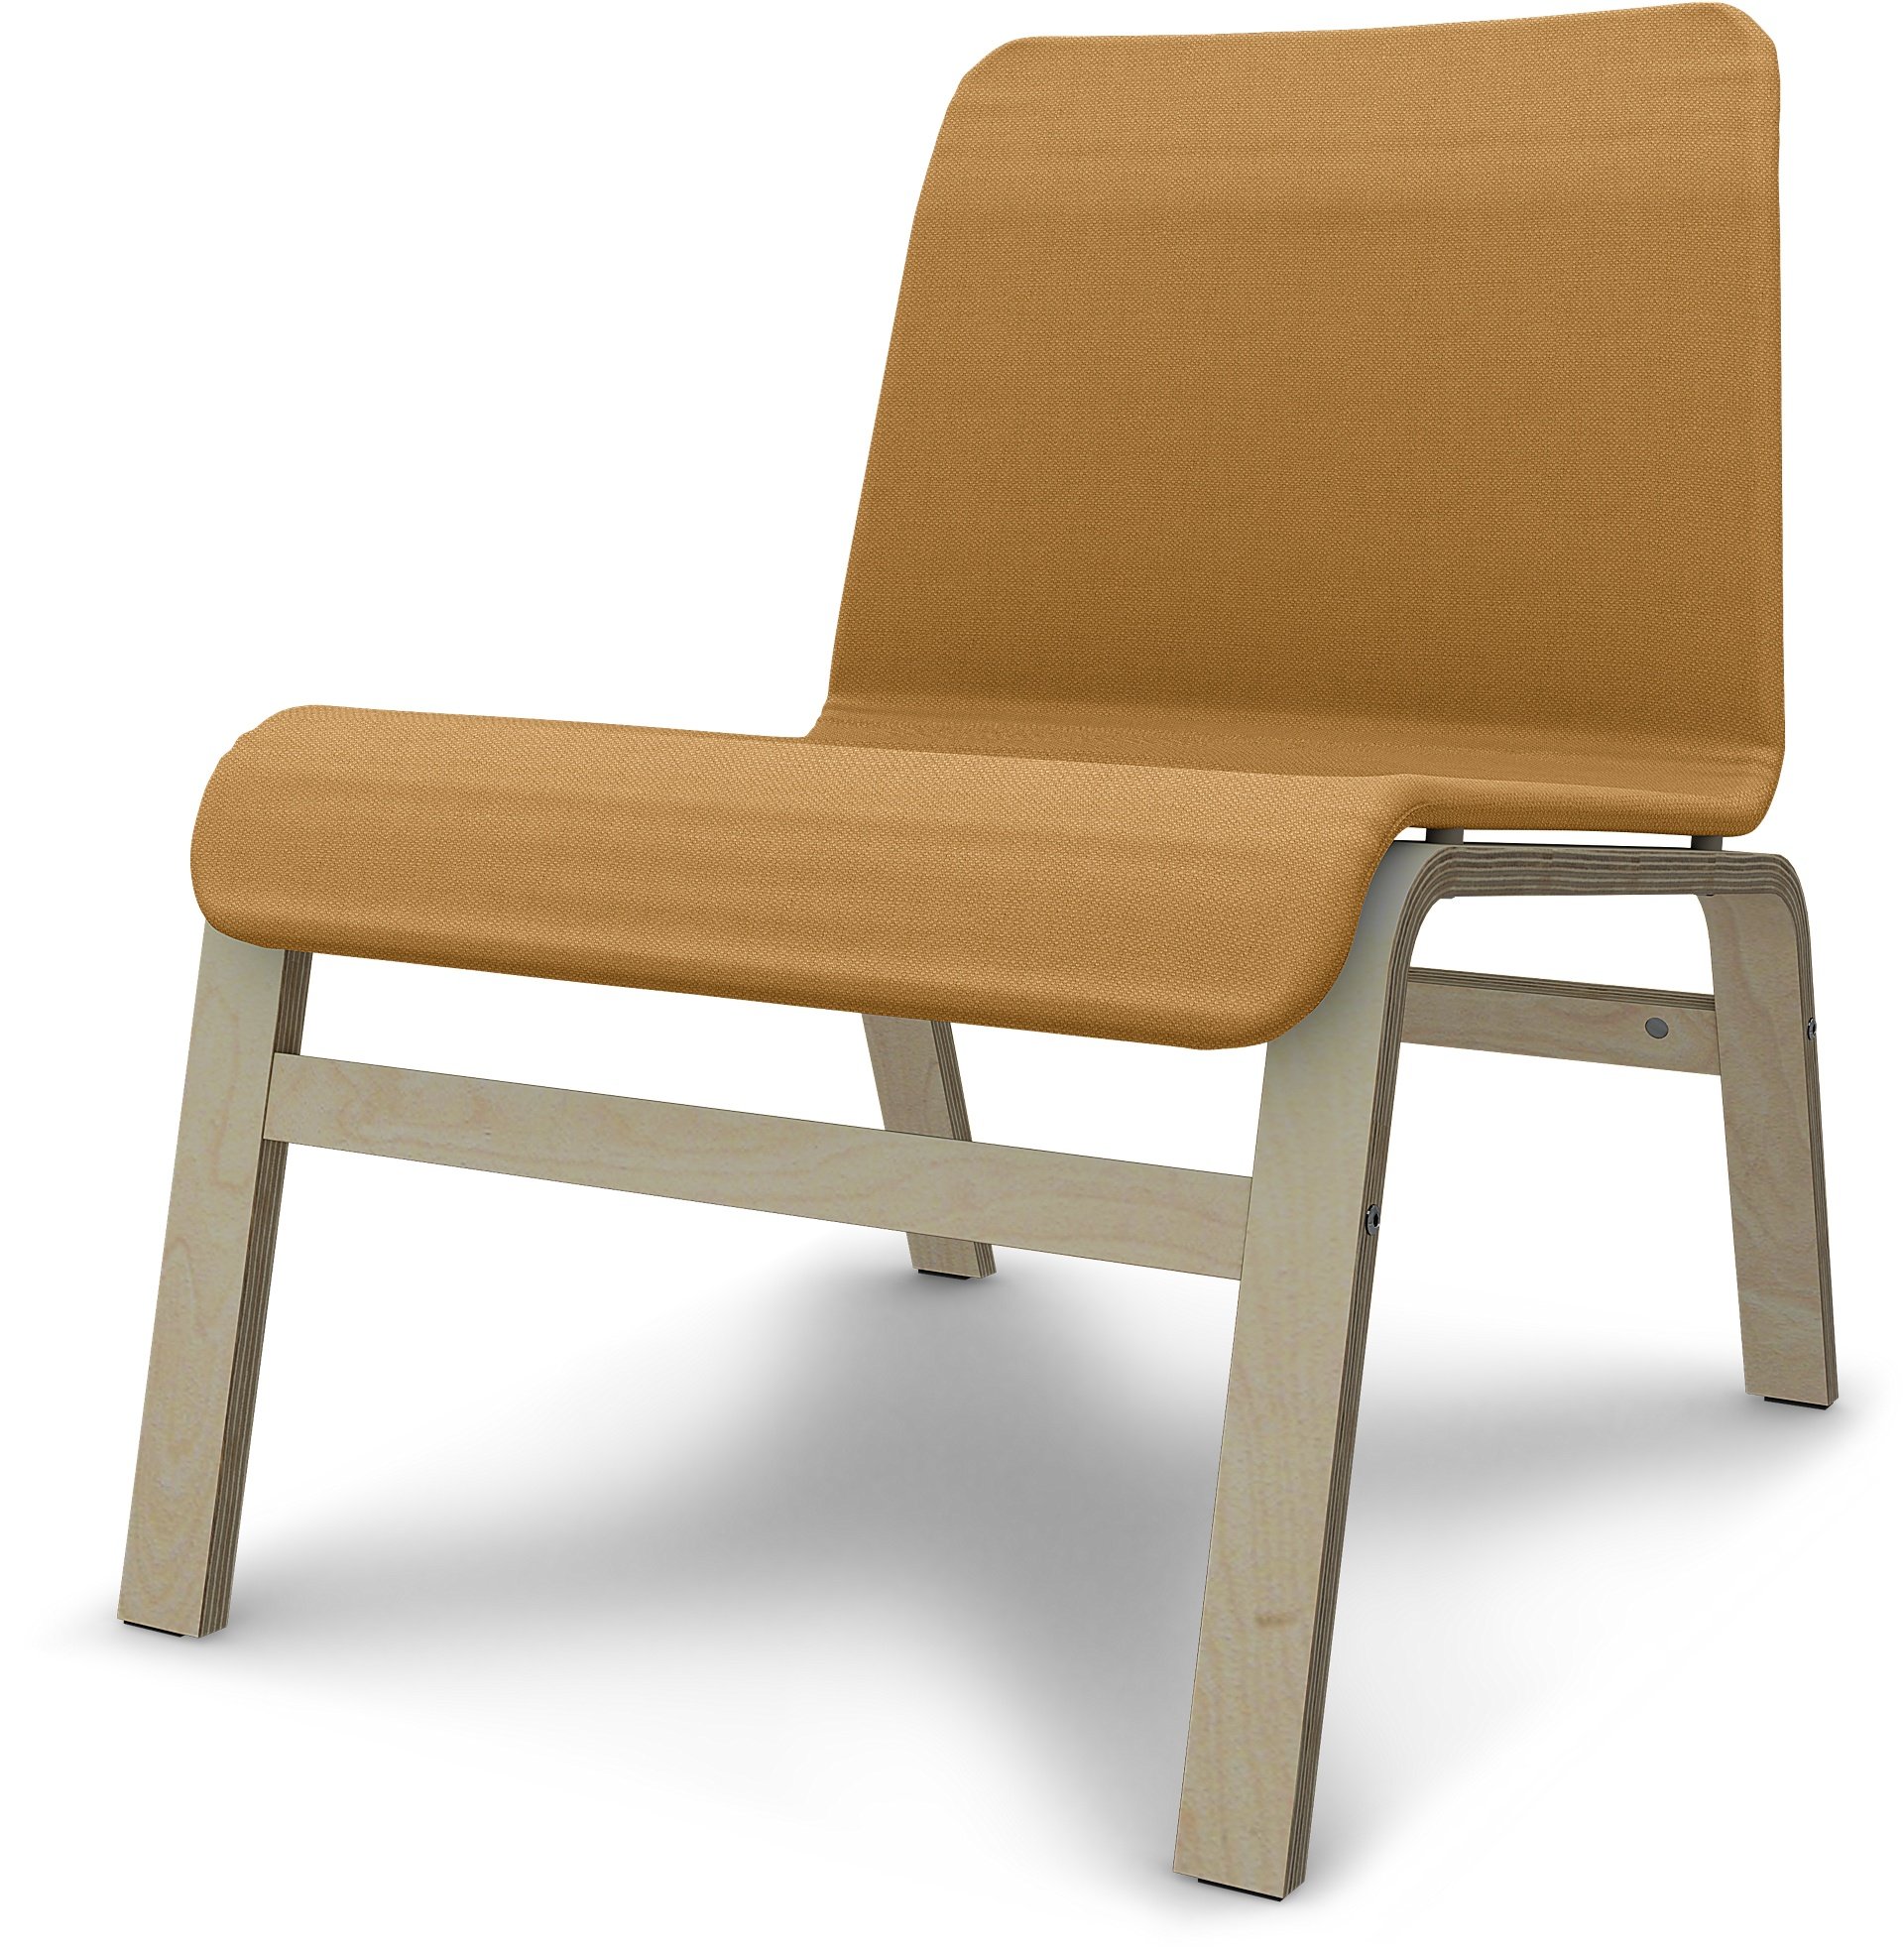 IKEA - Nolmyra chair, Mustard, Linen - Bemz